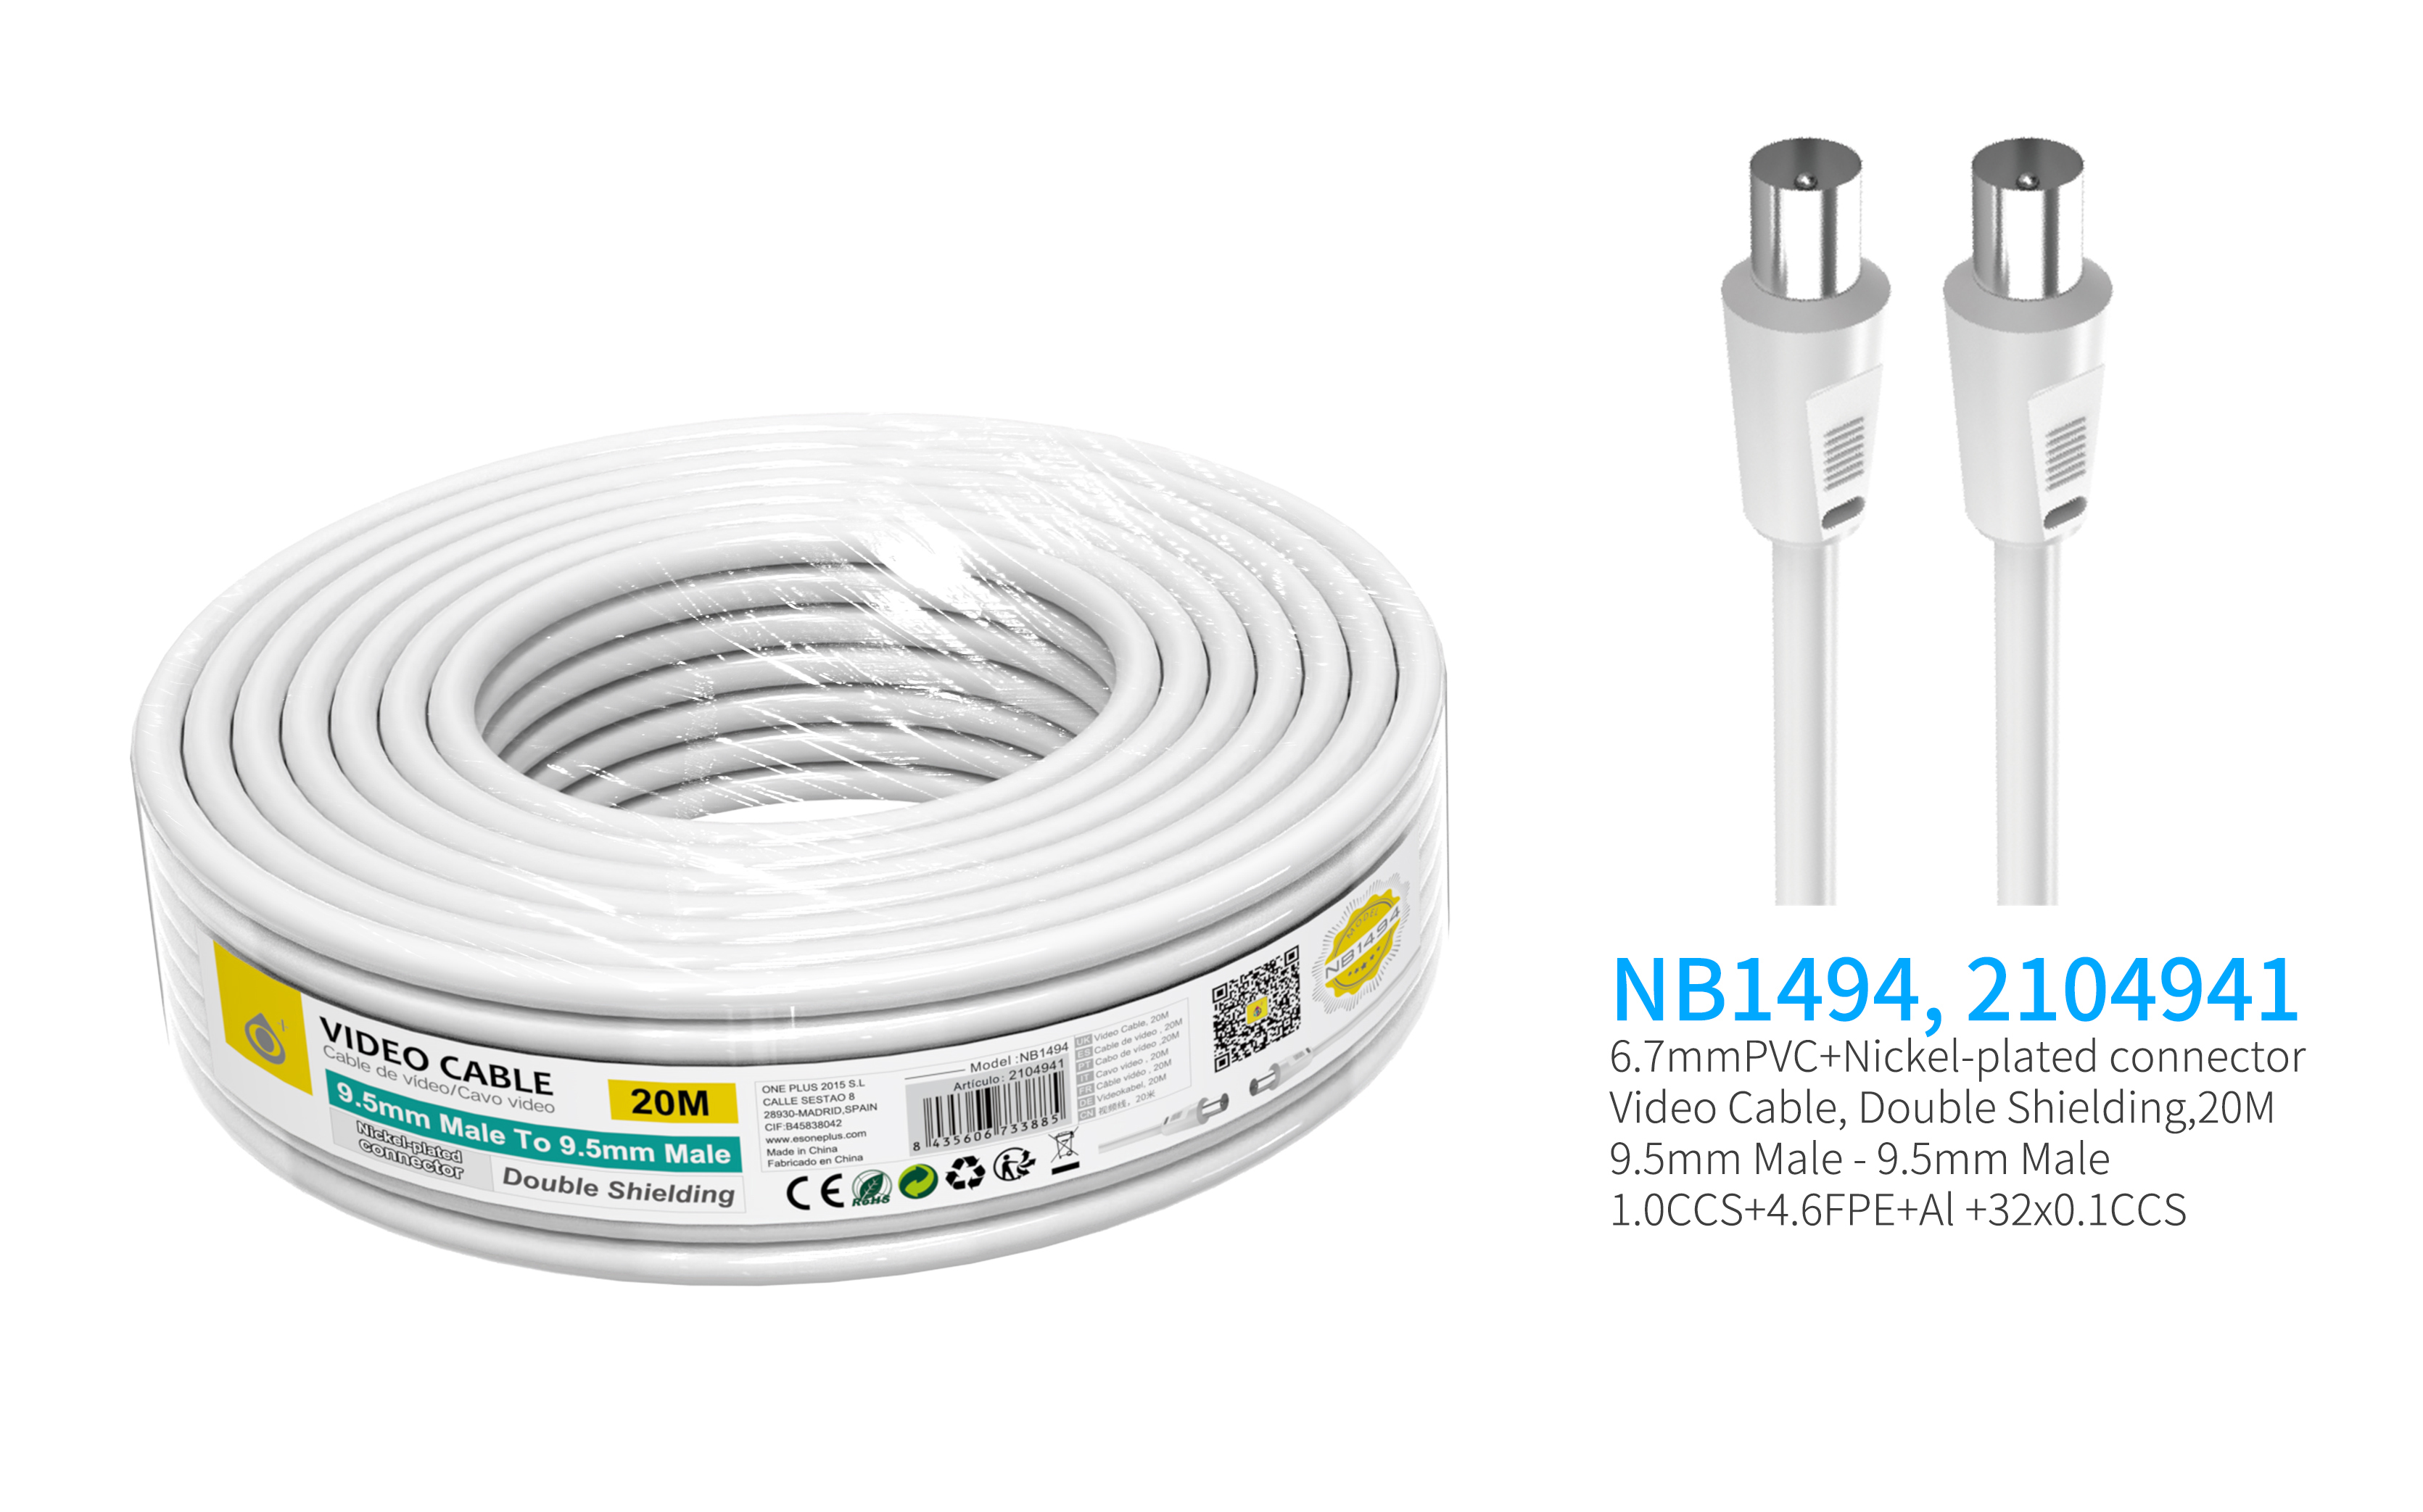 NB1494  Cable de Video(Coaxial)Conector banado en niquel 9.5mm  Macho a Macho, doble blindaje, 20 Me